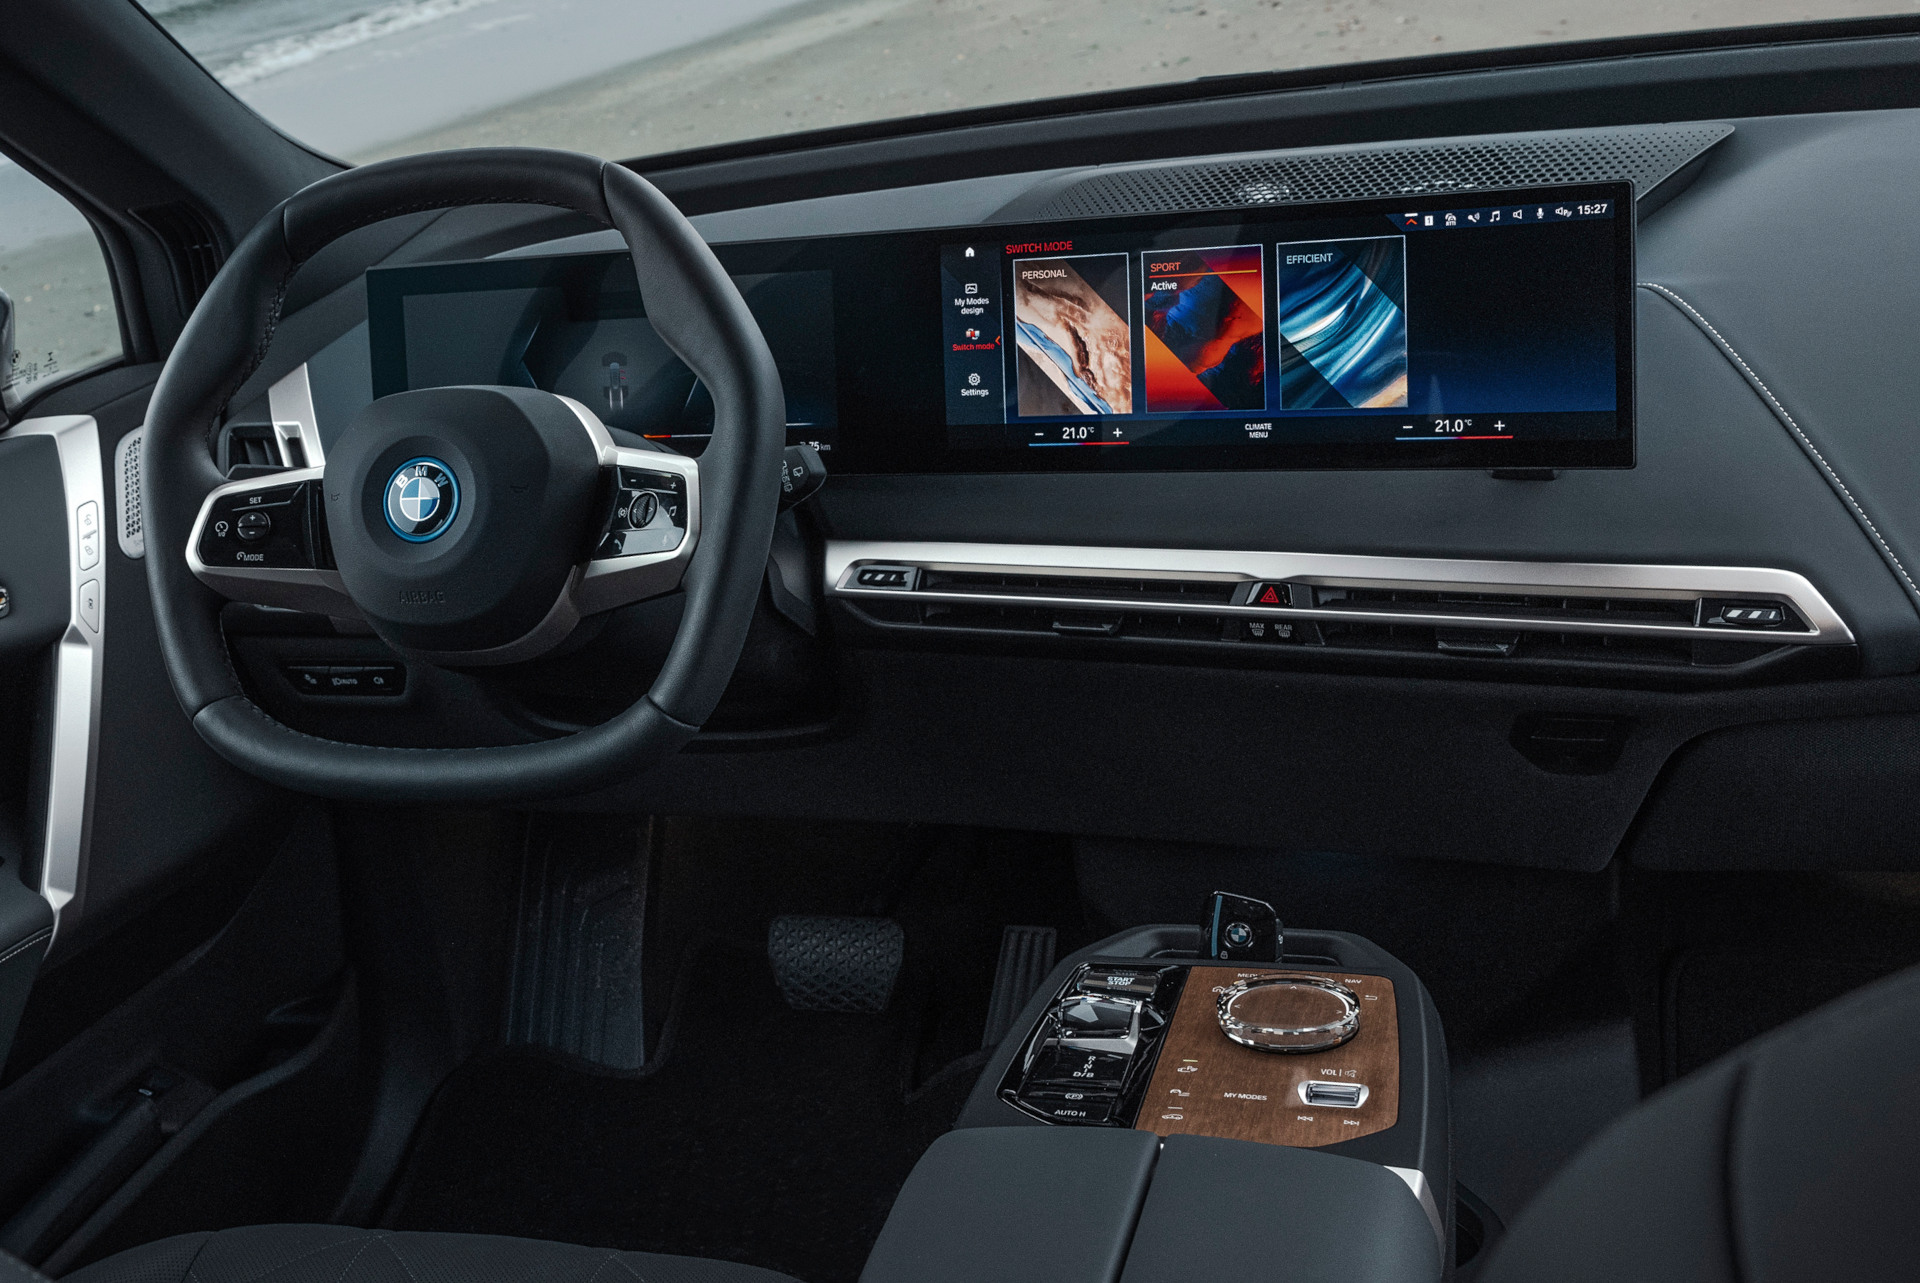 BMW X3 G45: Erlkönig-Fotos zeigen großen iDrive-Controller